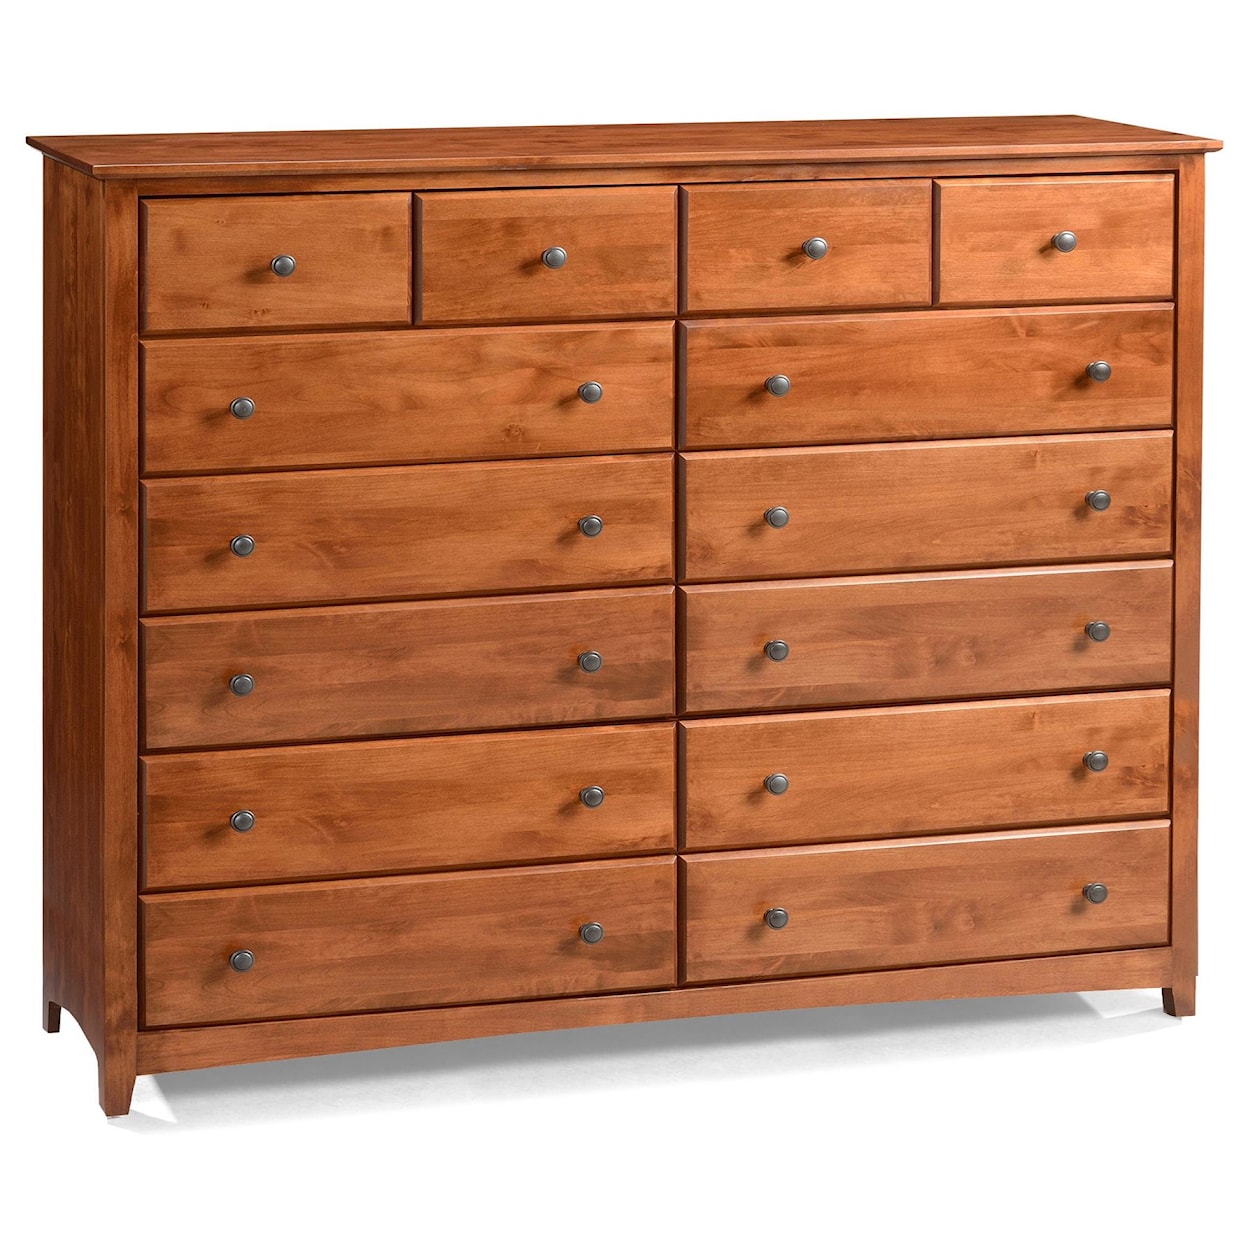 Archbold Furniture Shaker 14 Drawer Dresser